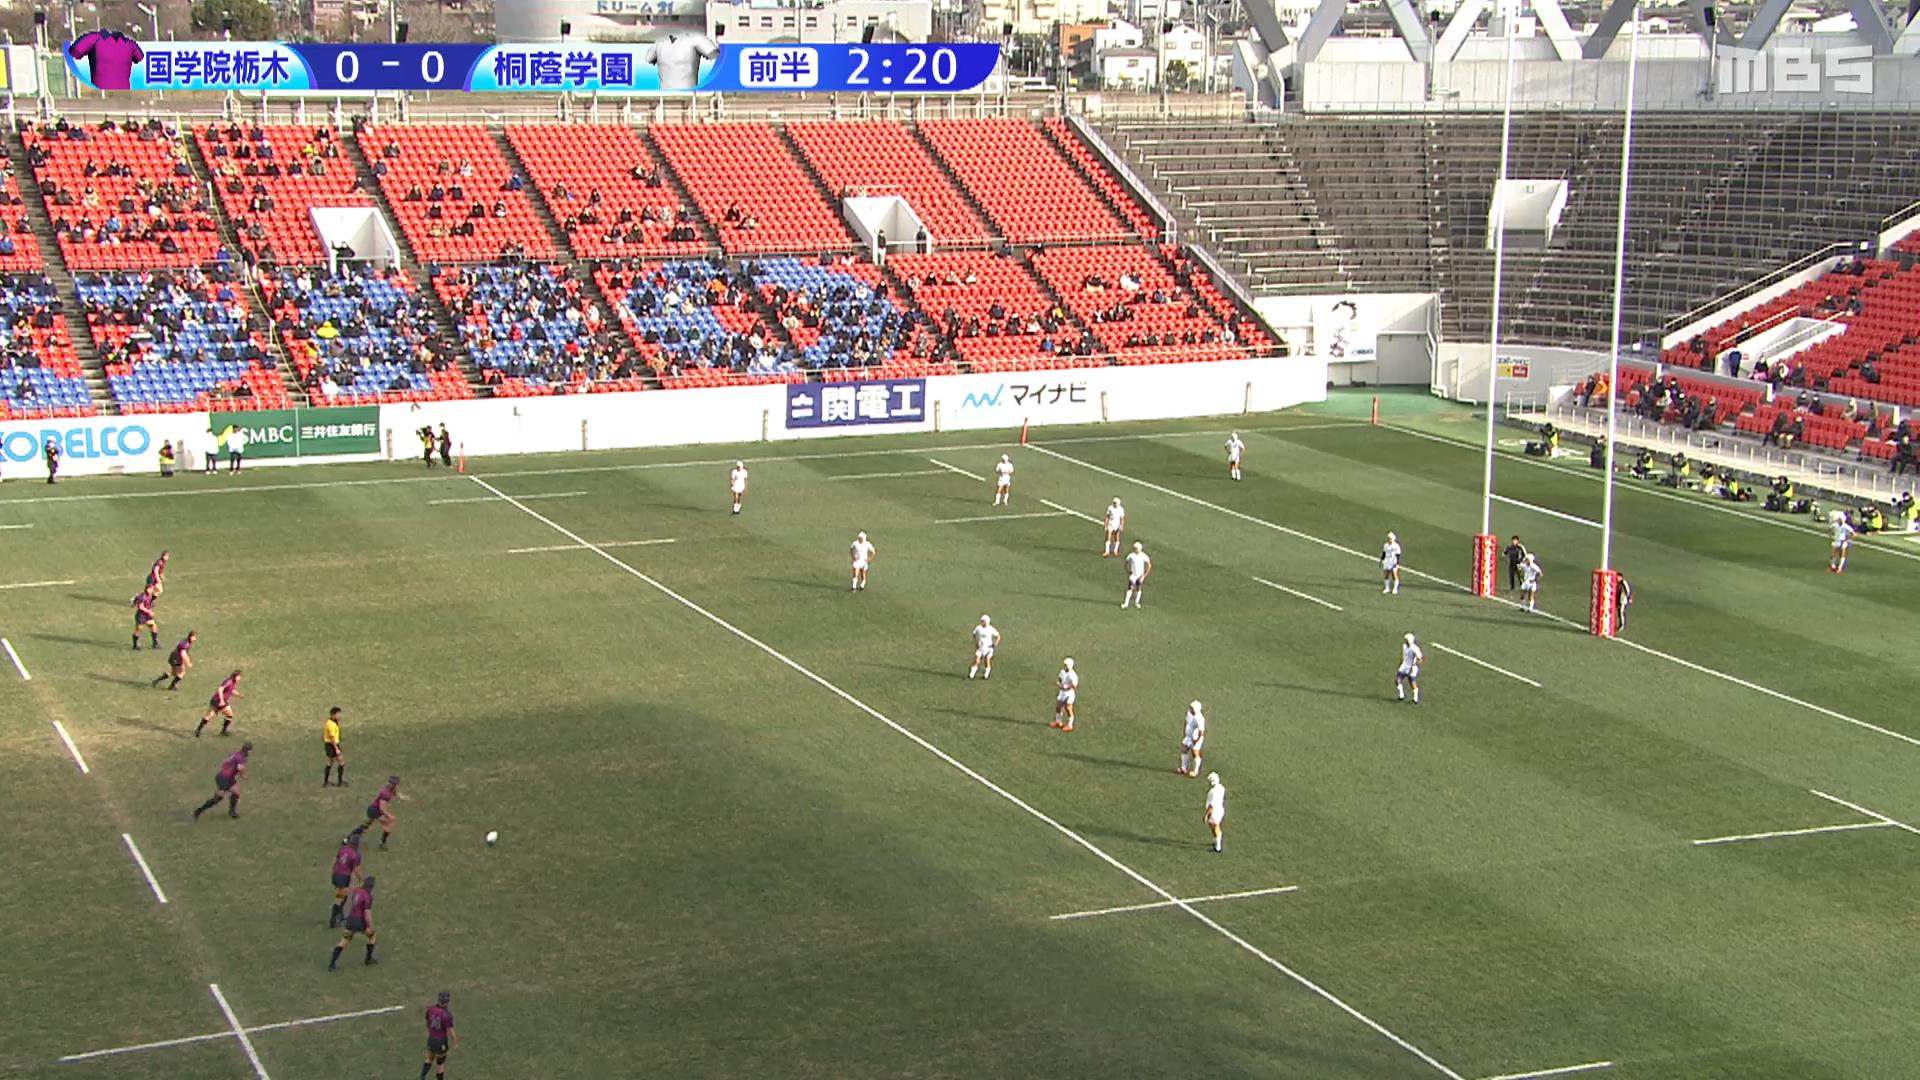 【全国高校ラグビー】準決勝 国学院栃木 vs. 桐蔭学園 敵陣10mライン付近、12によるPG成功。